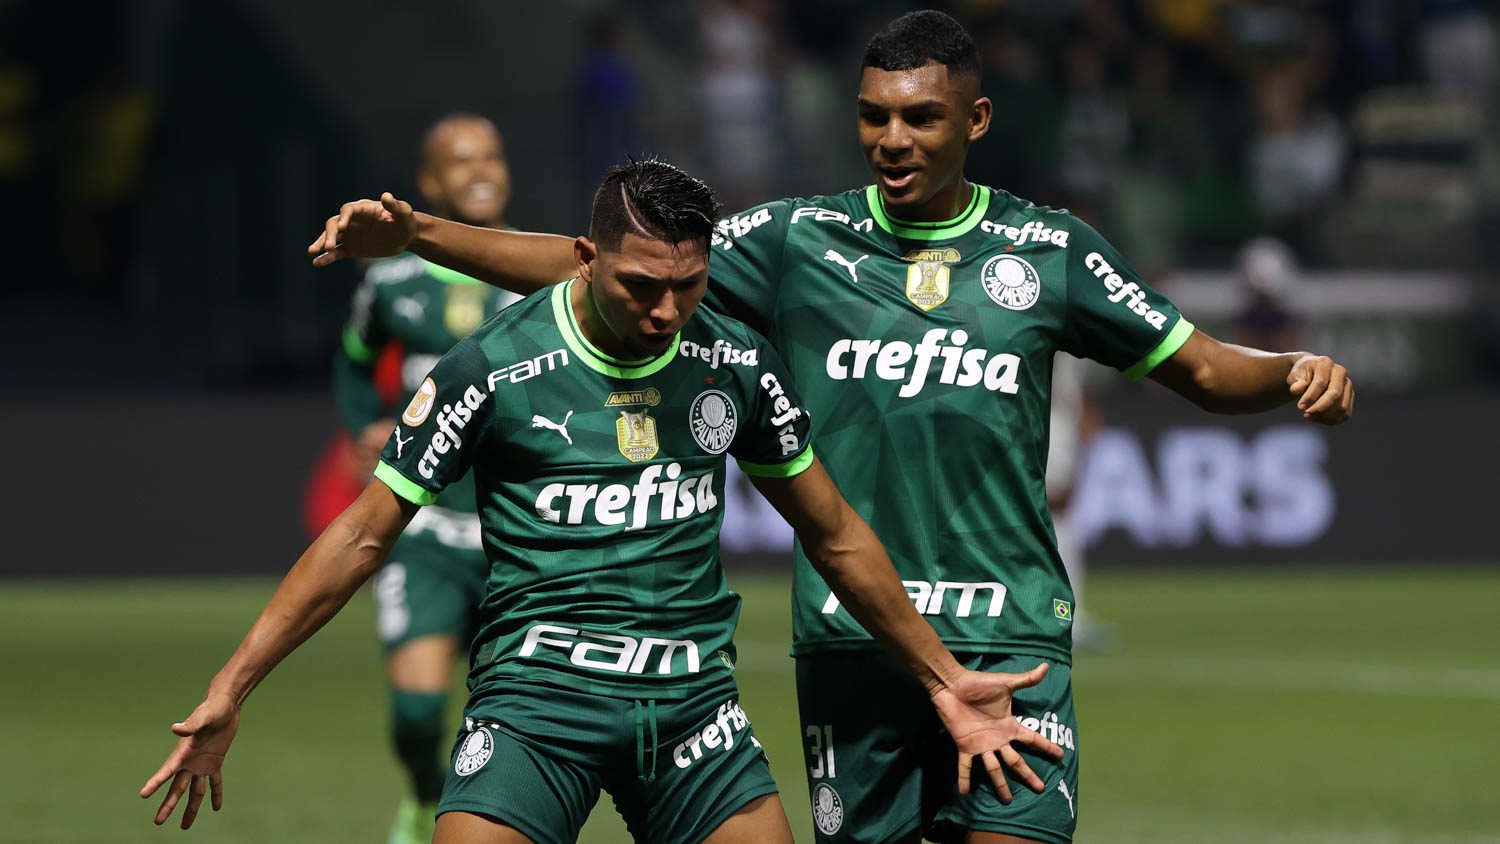 Com 5 integrantes do Palmeiras, - Portal Arena Alviverde